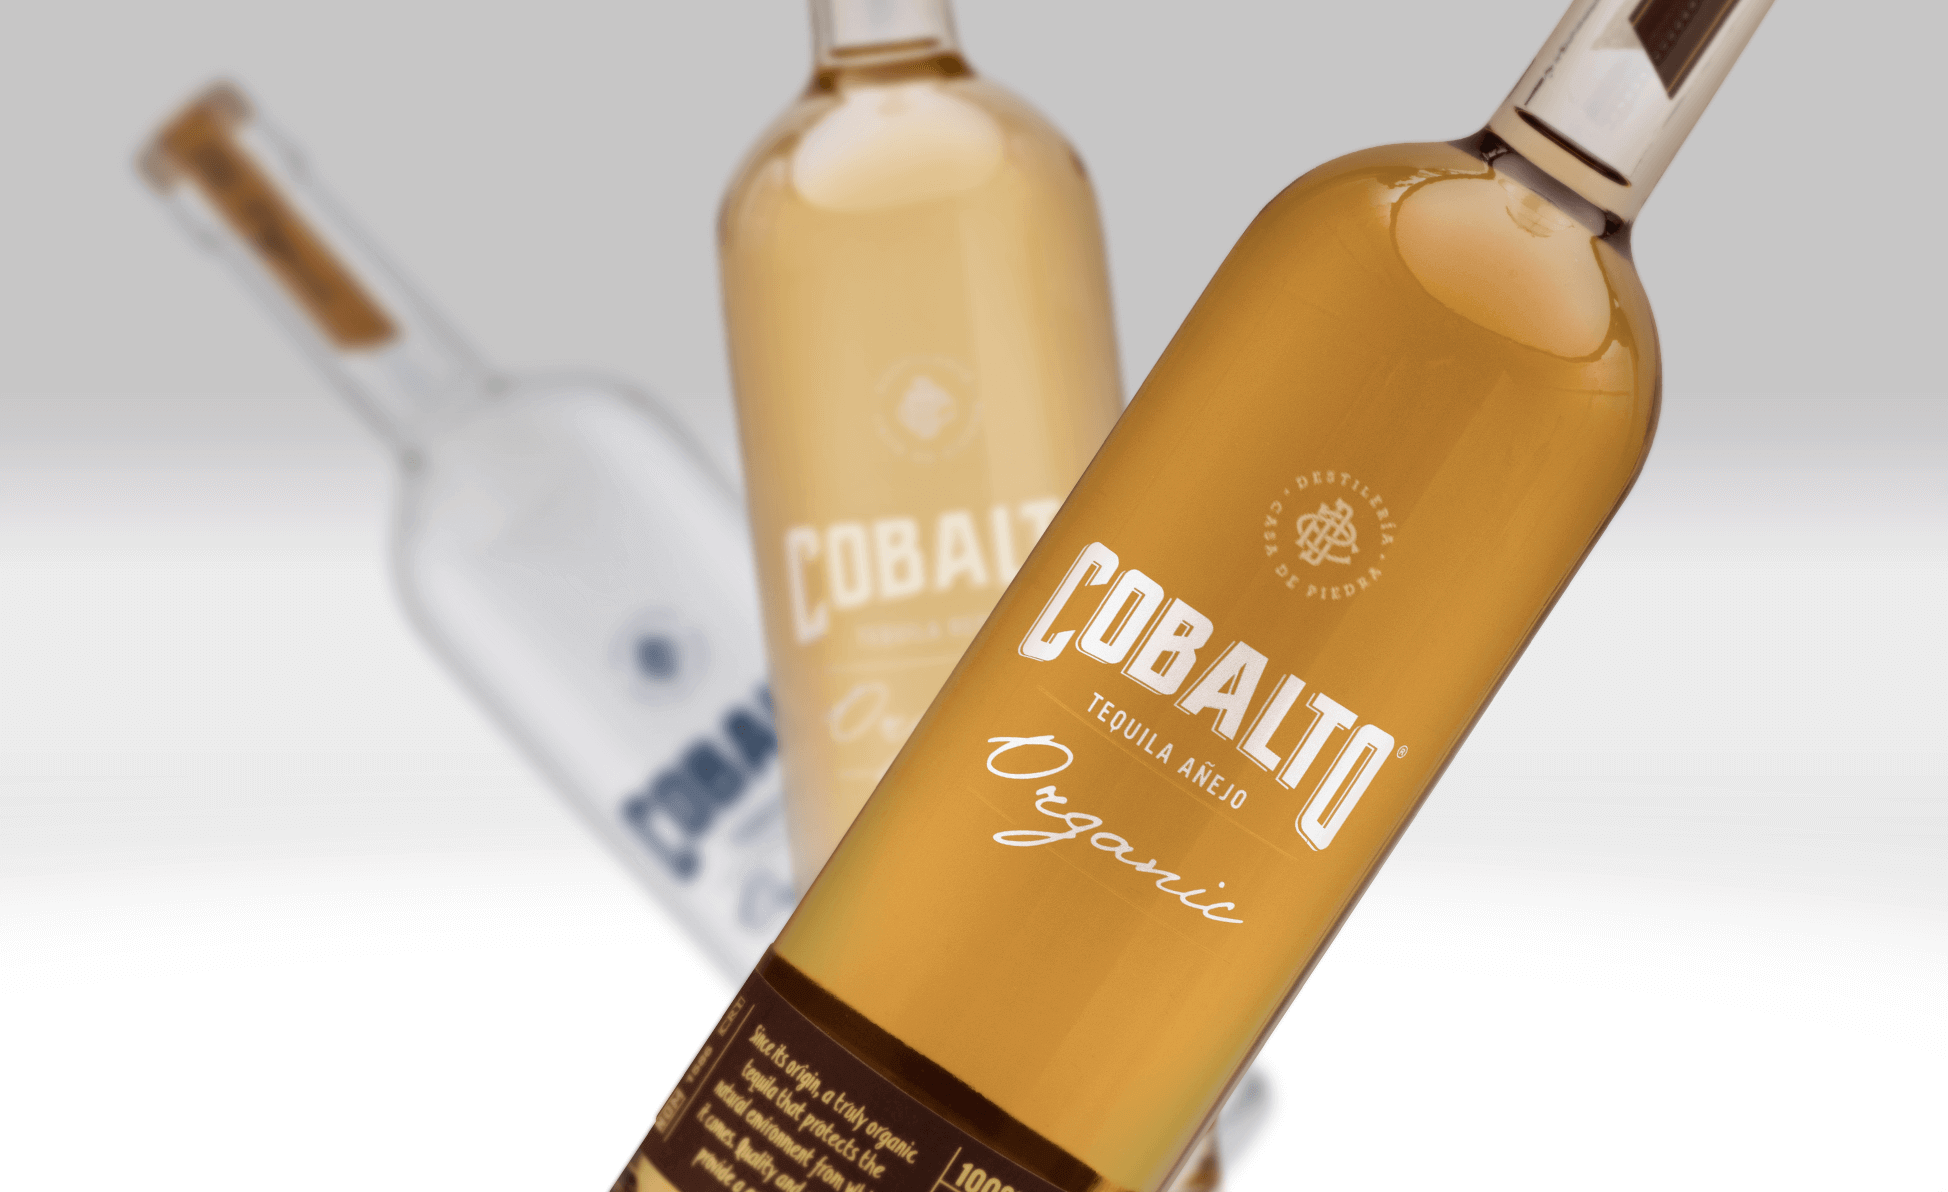 Tequila Cobalto, el tequila orgánico.